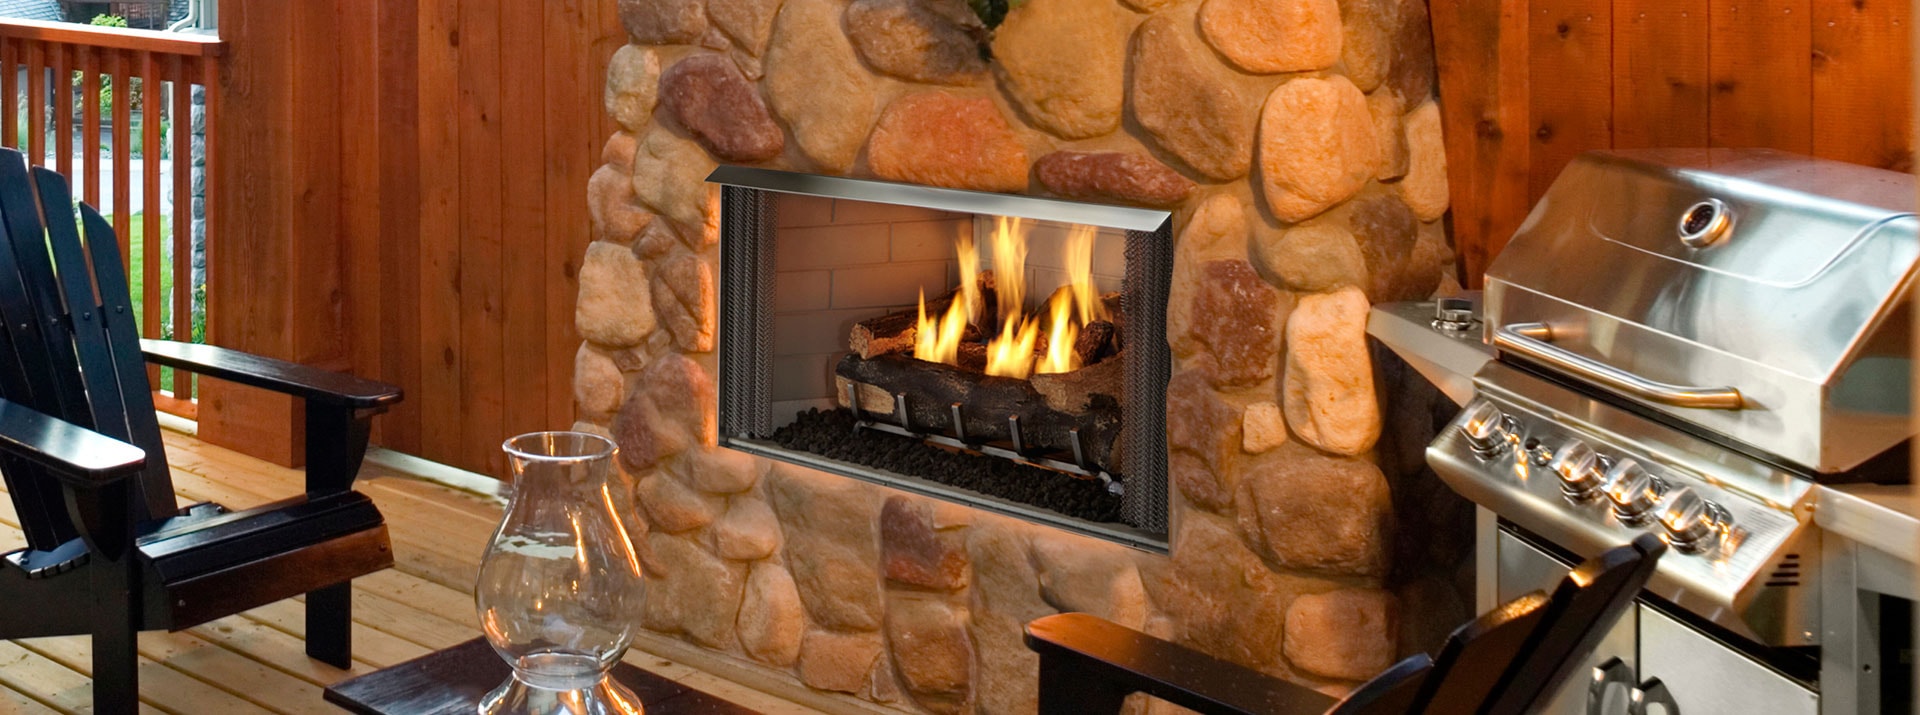 Gas Fireplace Insert Ideas Inspirational Outdoor Lifestyles Villa Gas Pact Outdoor Fireplace